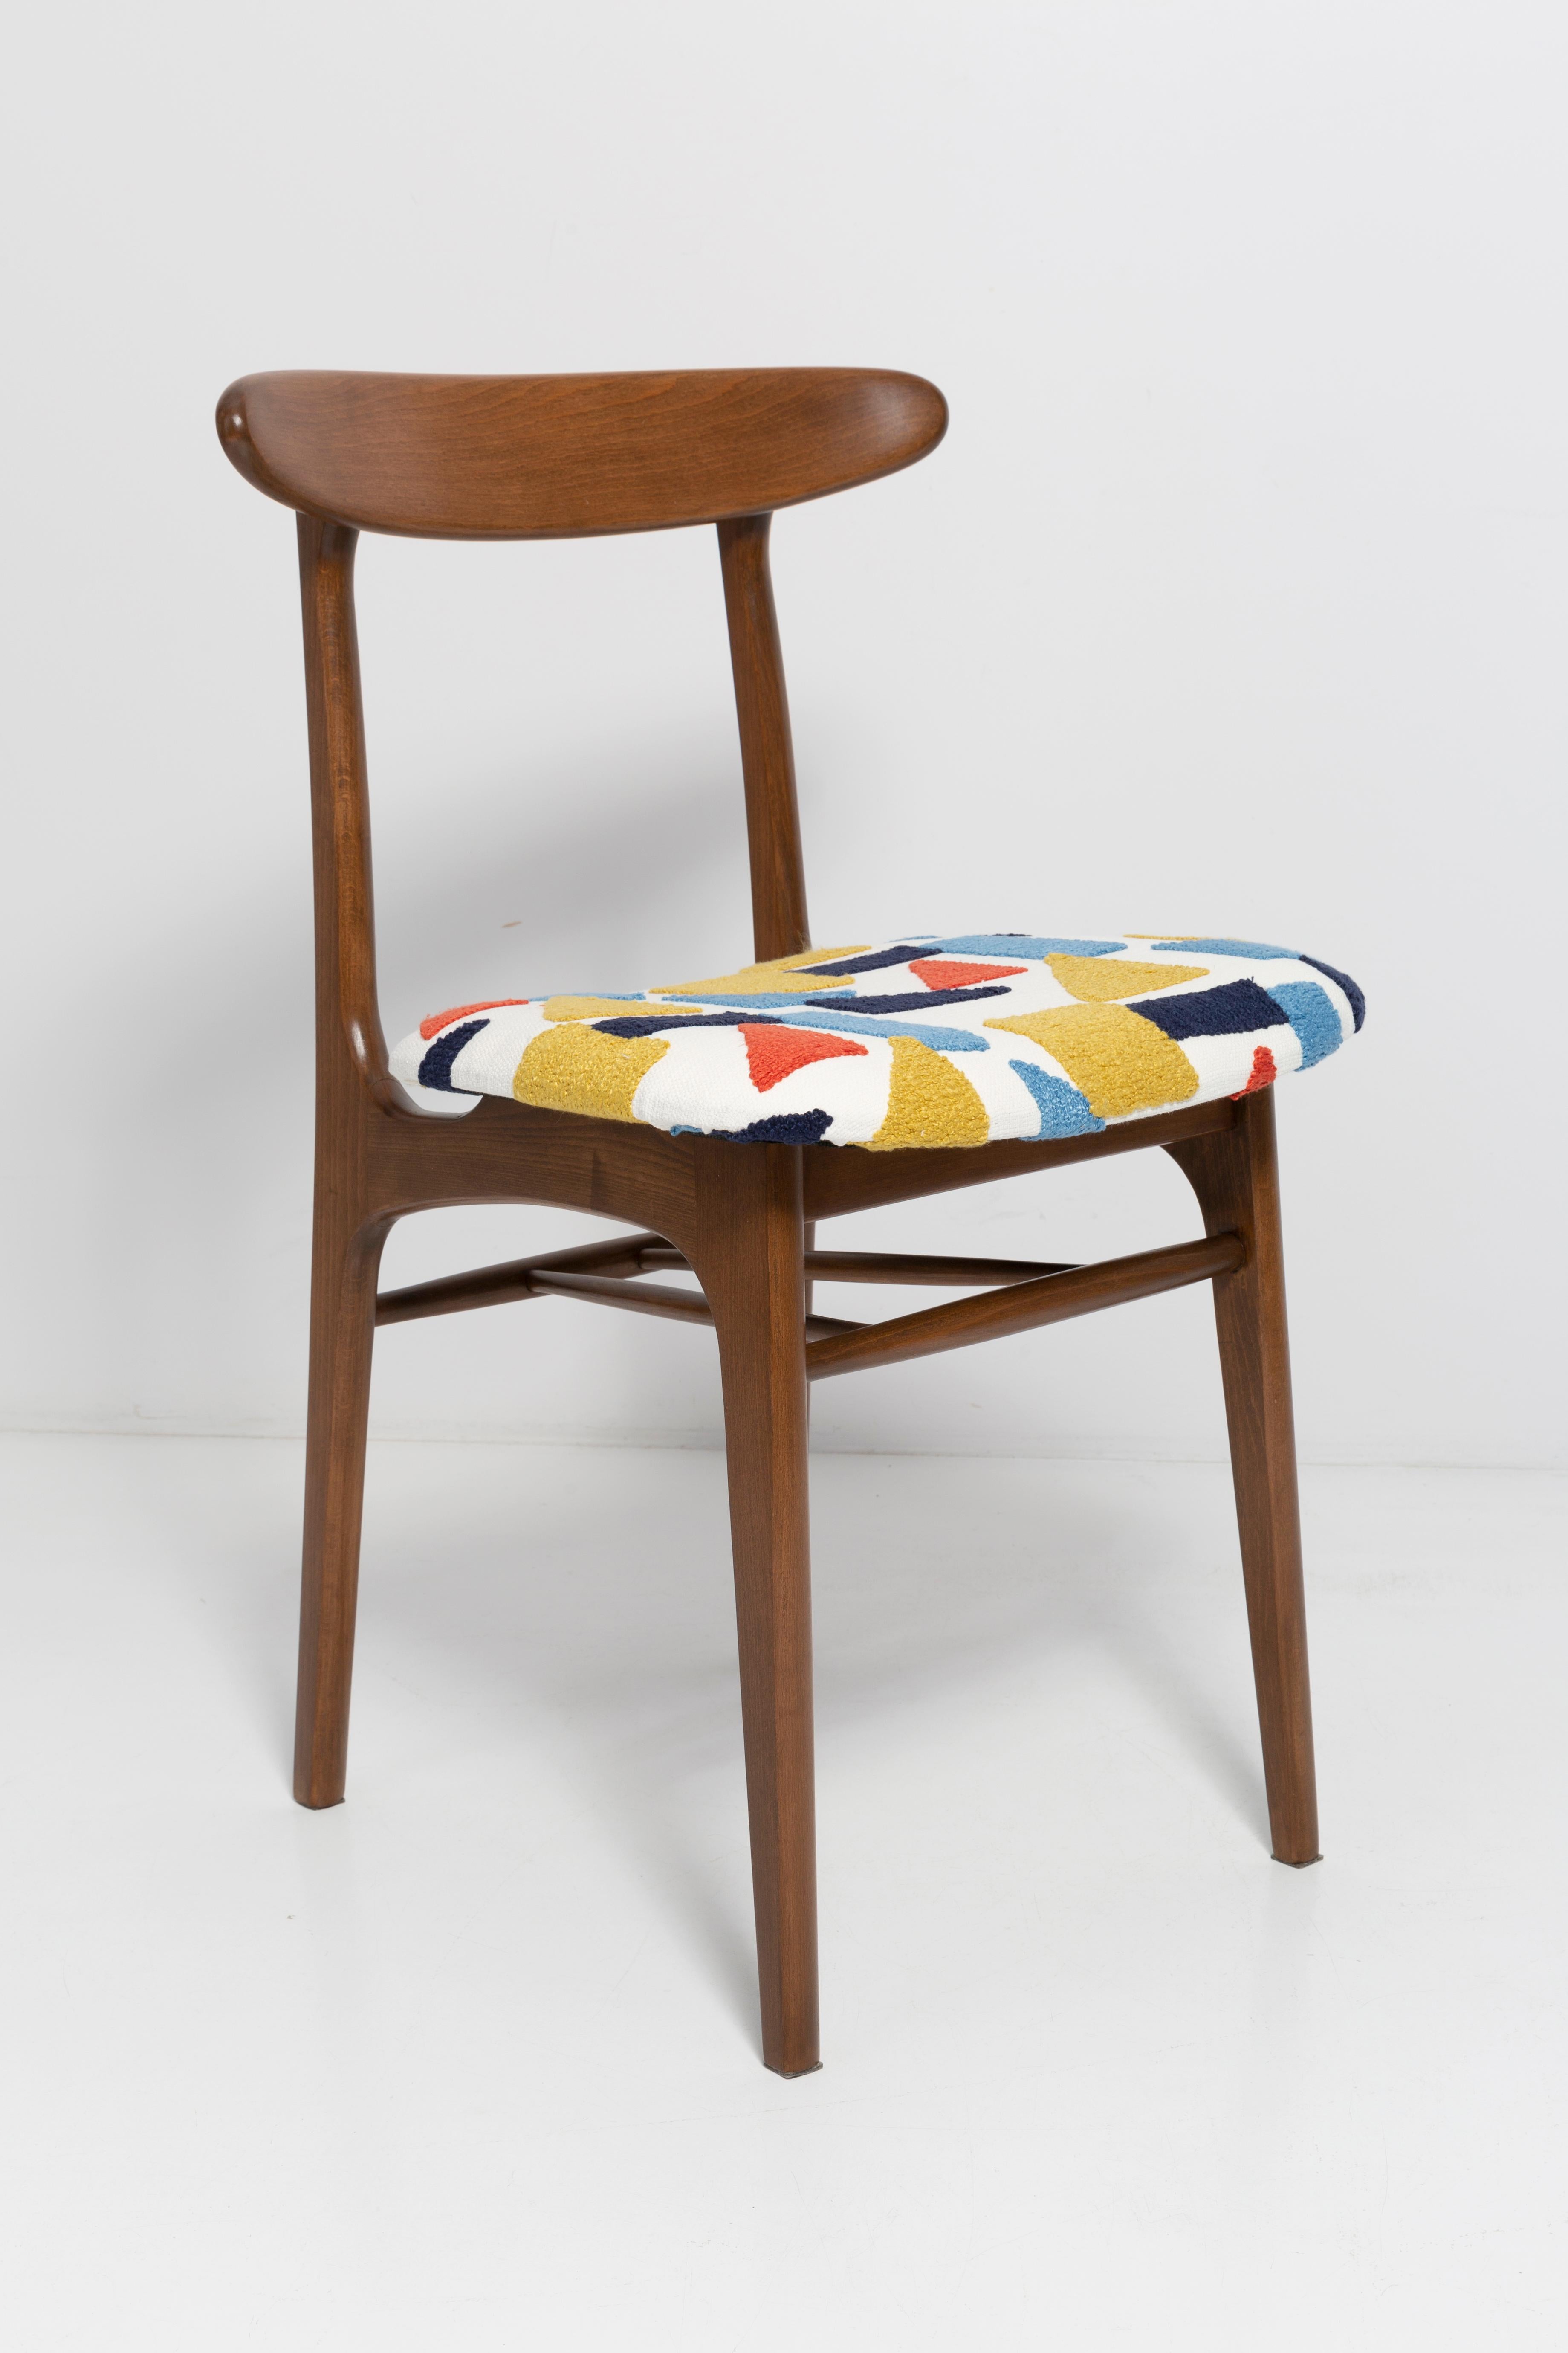 Stuhl entworfen von Prof. Rajmund Halas. Hergestellt aus Buchenholz. Der Stuhl wurde komplett neu gepolstert, die Holzarbeiten wurden aufgefrischt. Der Sitz ist aus weißem, strapazierfähigem und angenehm zu berührendem spanischem Stoff gefertigt.